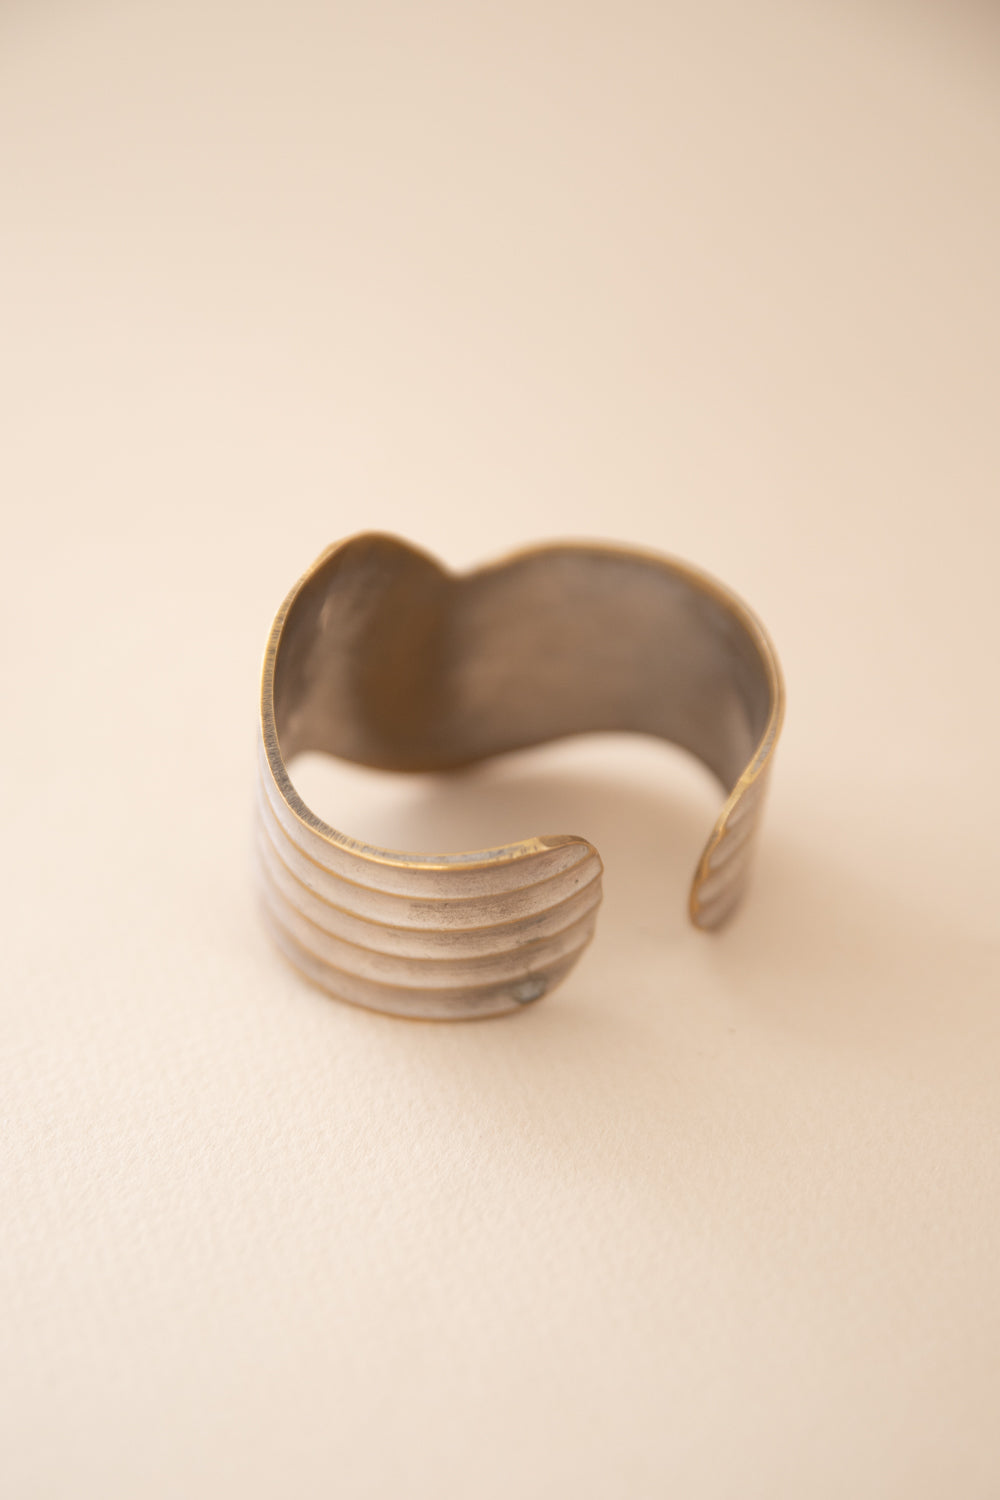 Silver + Brass Cuff Bracelet